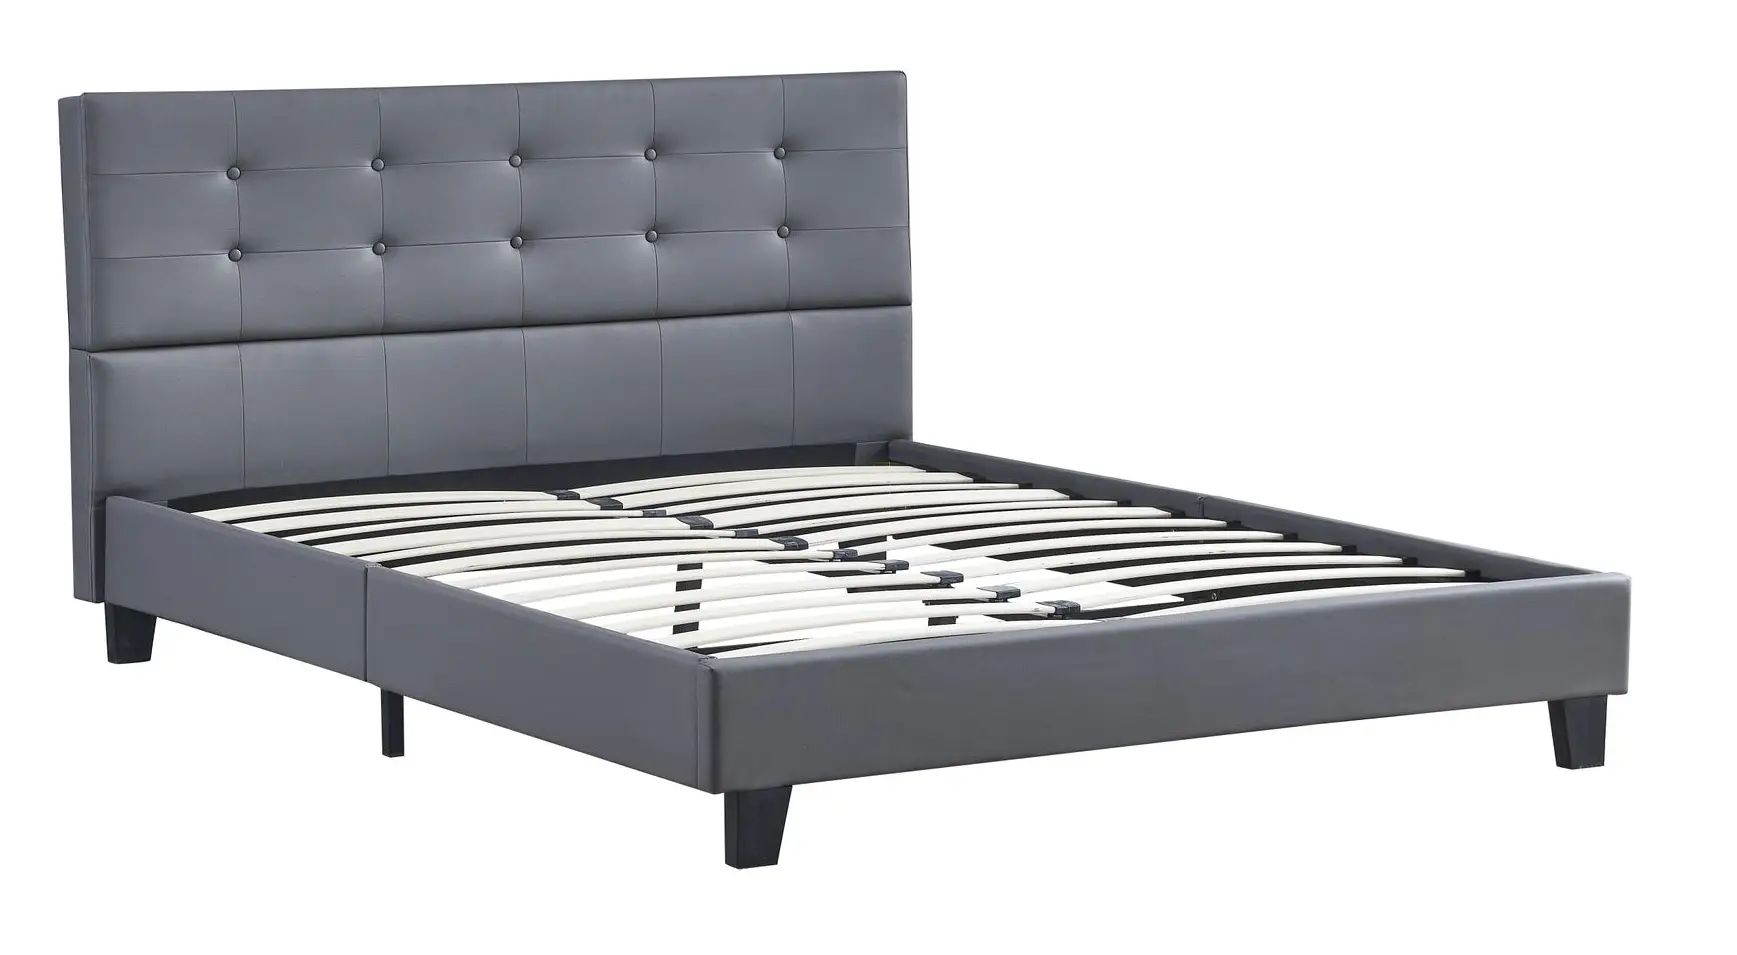 Bett aus grauem Kunstleder 140x200cm